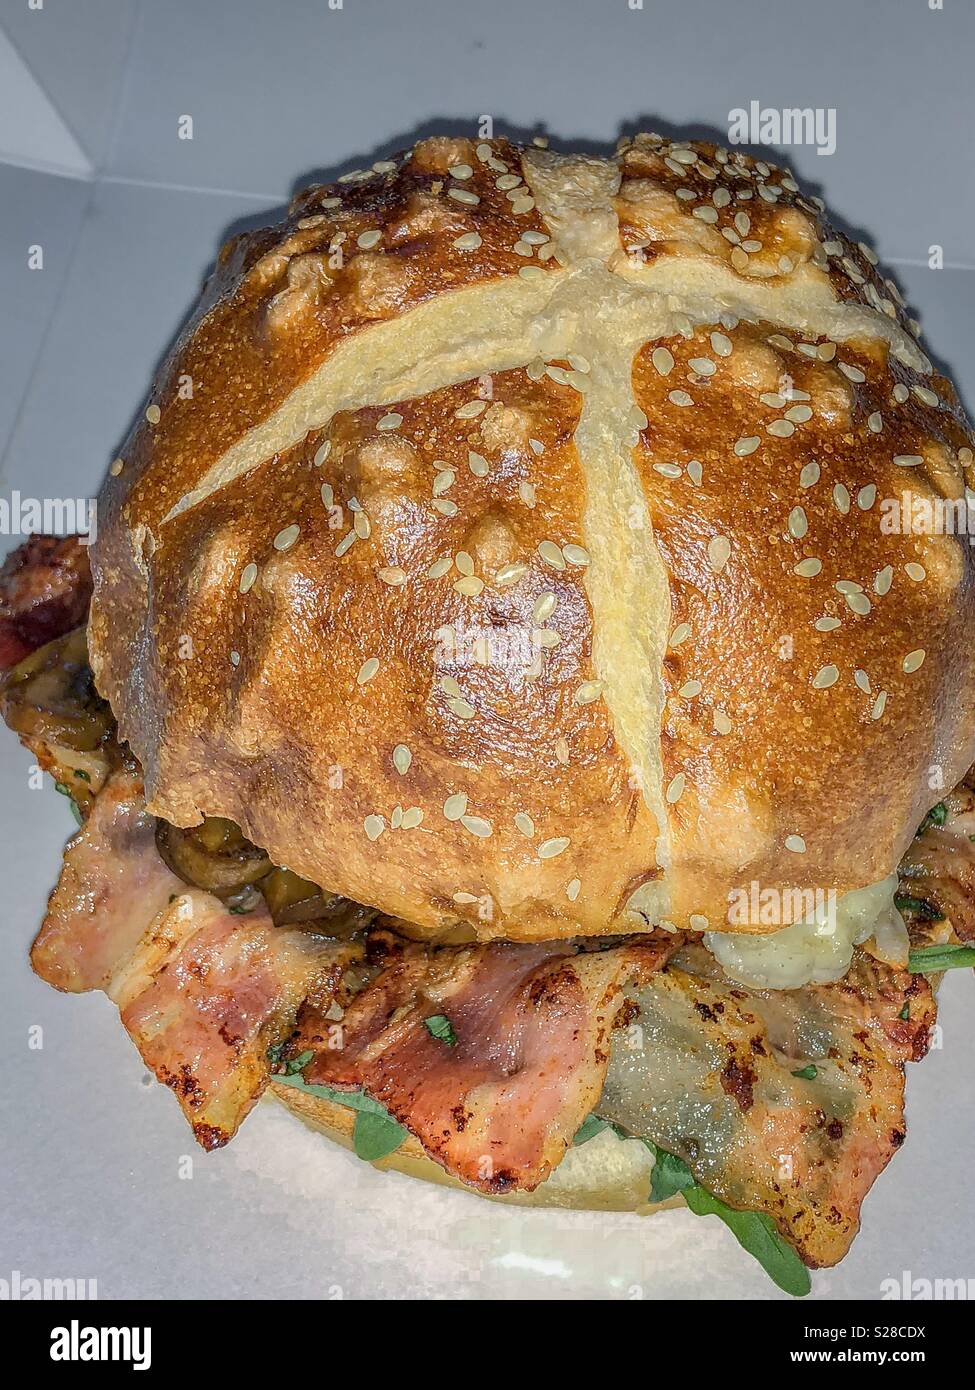 Köstliche essen Fotografie von der Beef Burger gefüllt mit Pilzen Stockfoto